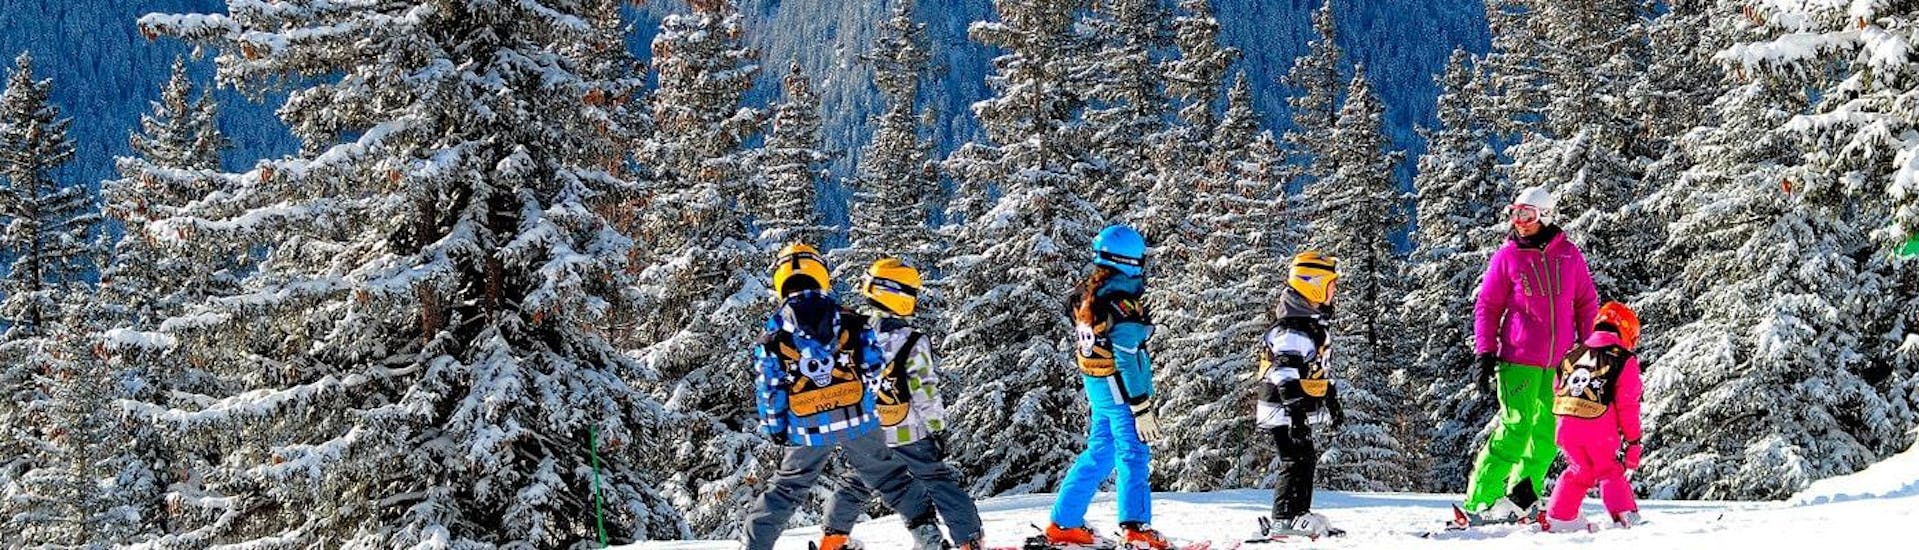 Des enfants apprennent à skier pendant leur Cours de ski pour Enfants (6-18 ans) - Tous niveaux avec l'école de ski Evolution 2 Val d'Isère.